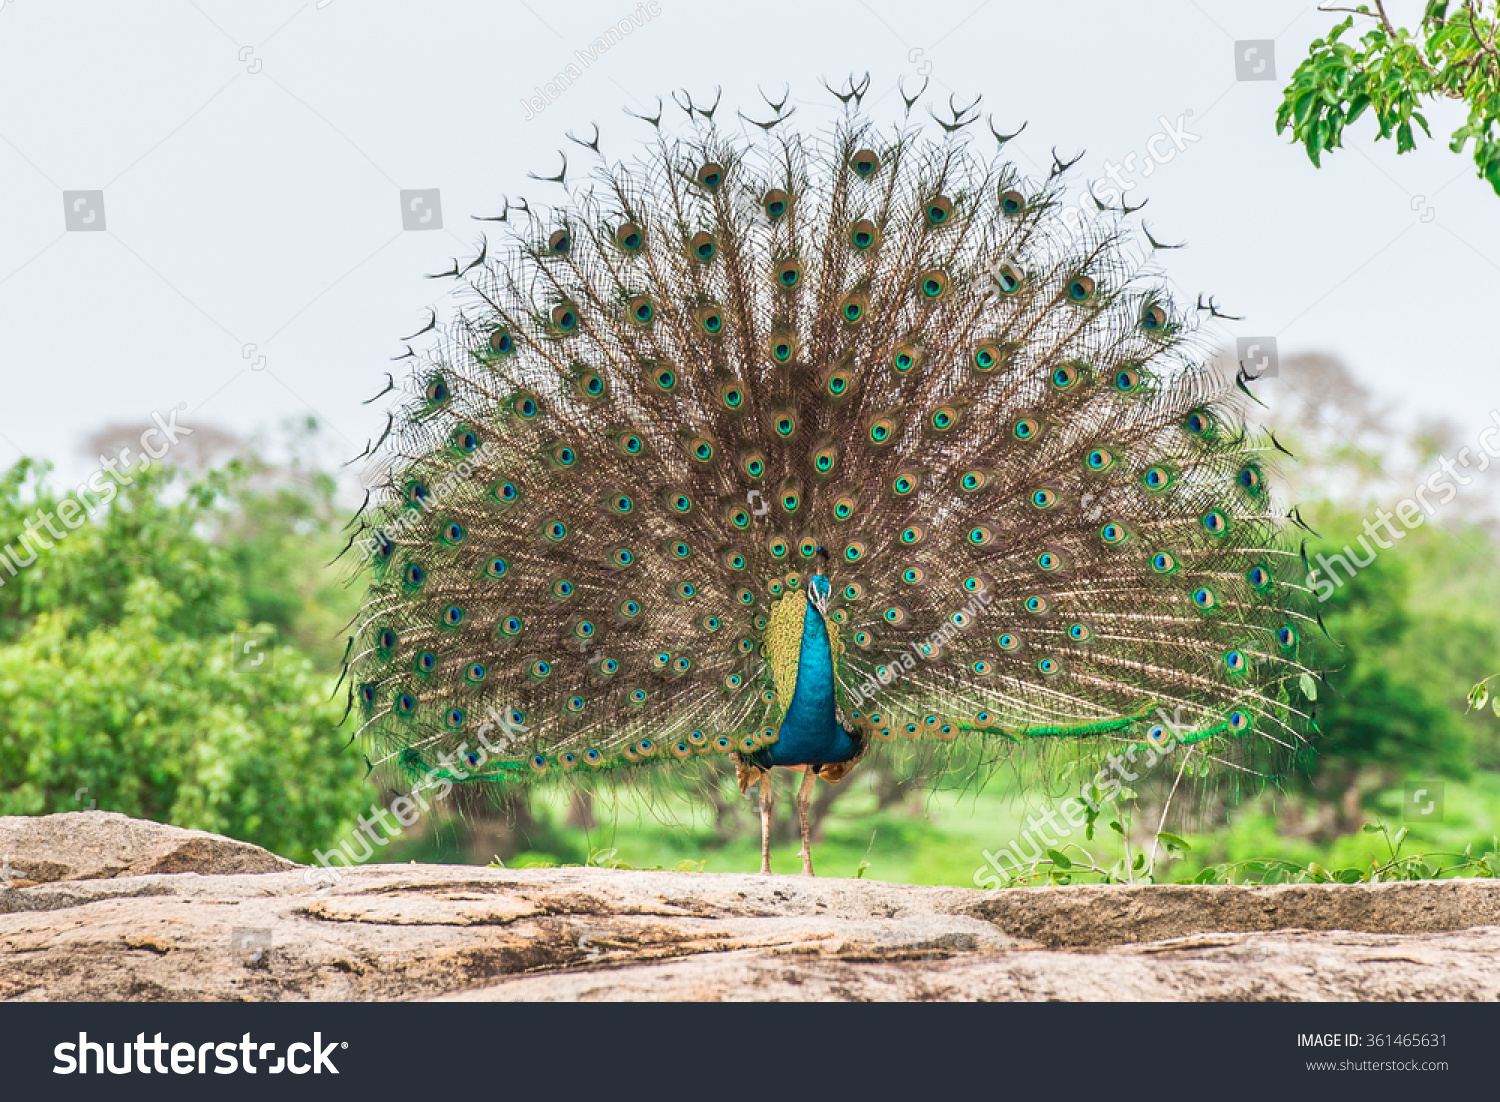 Peacock in national park  Yala, Sri Lanka #361465631